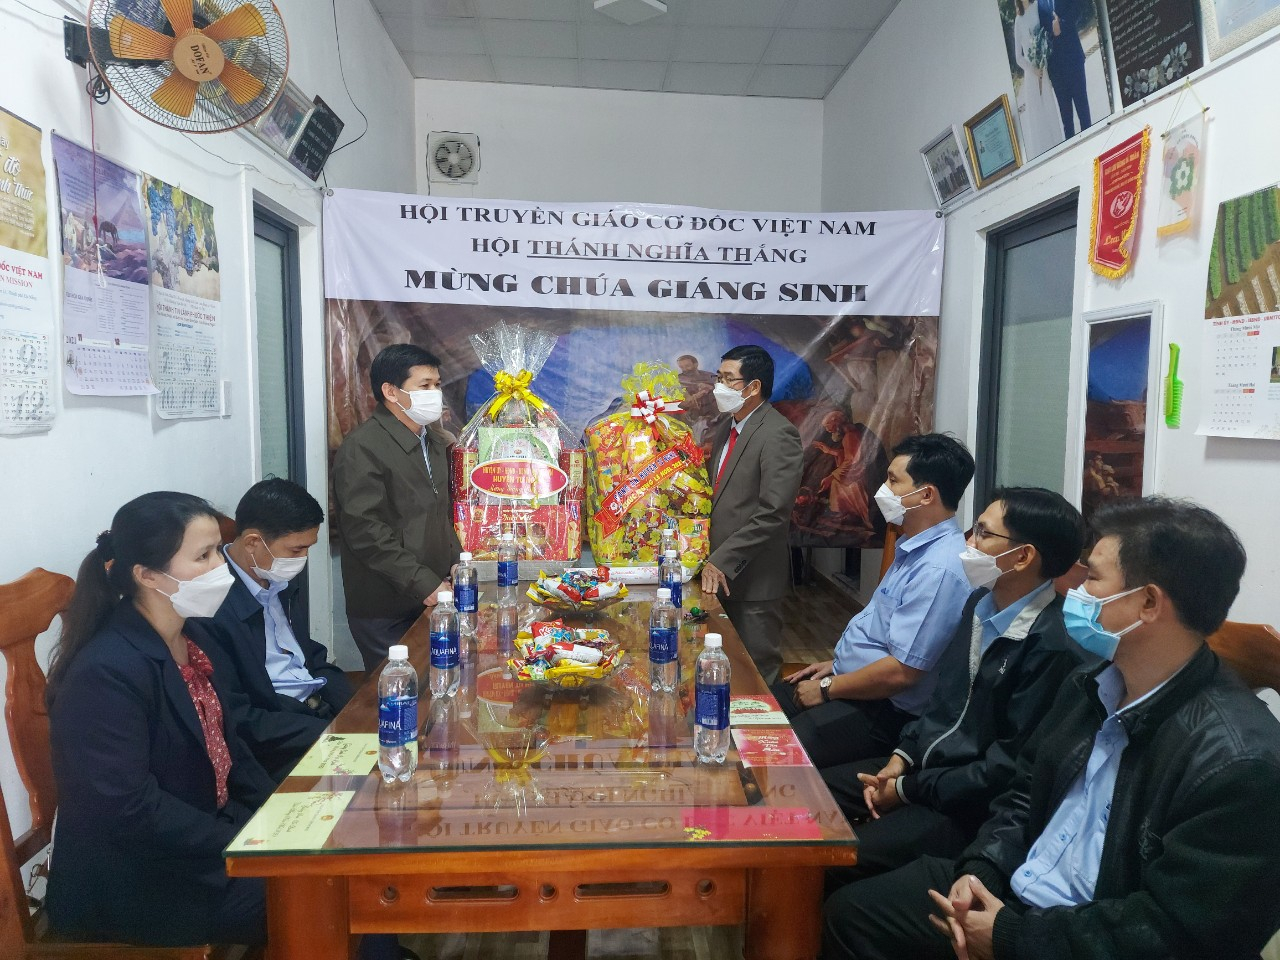 Lãnh đạo huyện Tư Nghĩa thăm, tặng quà cho các tổ chức tôn giáo trên địa bàn huyện nhân dịp lễ Giáng sinh năm 2021